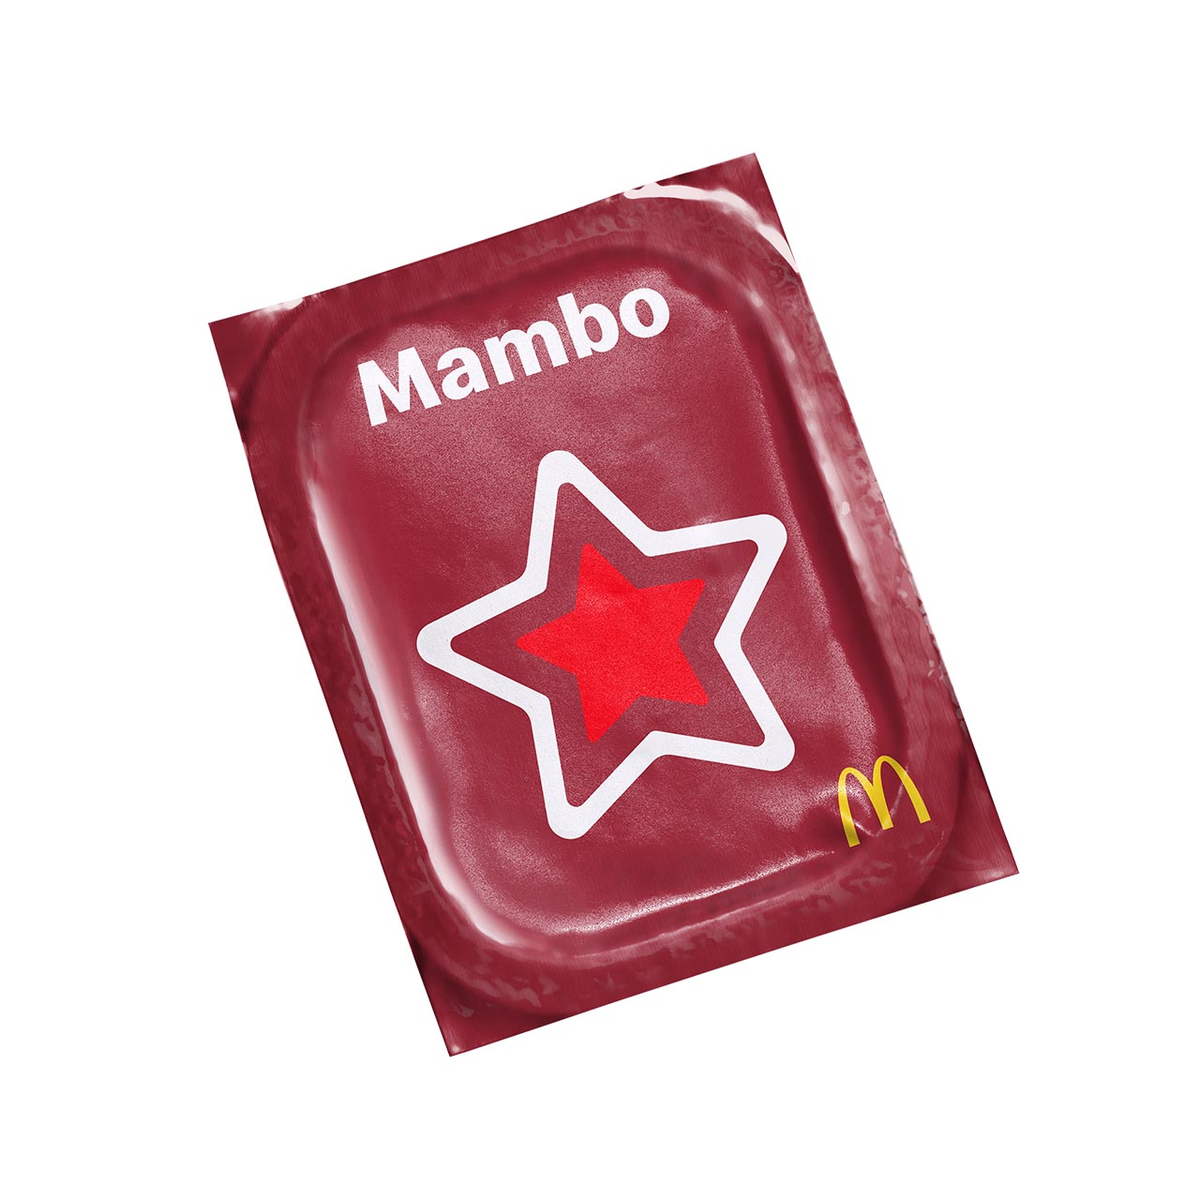 How To Make Mambo Sauce 